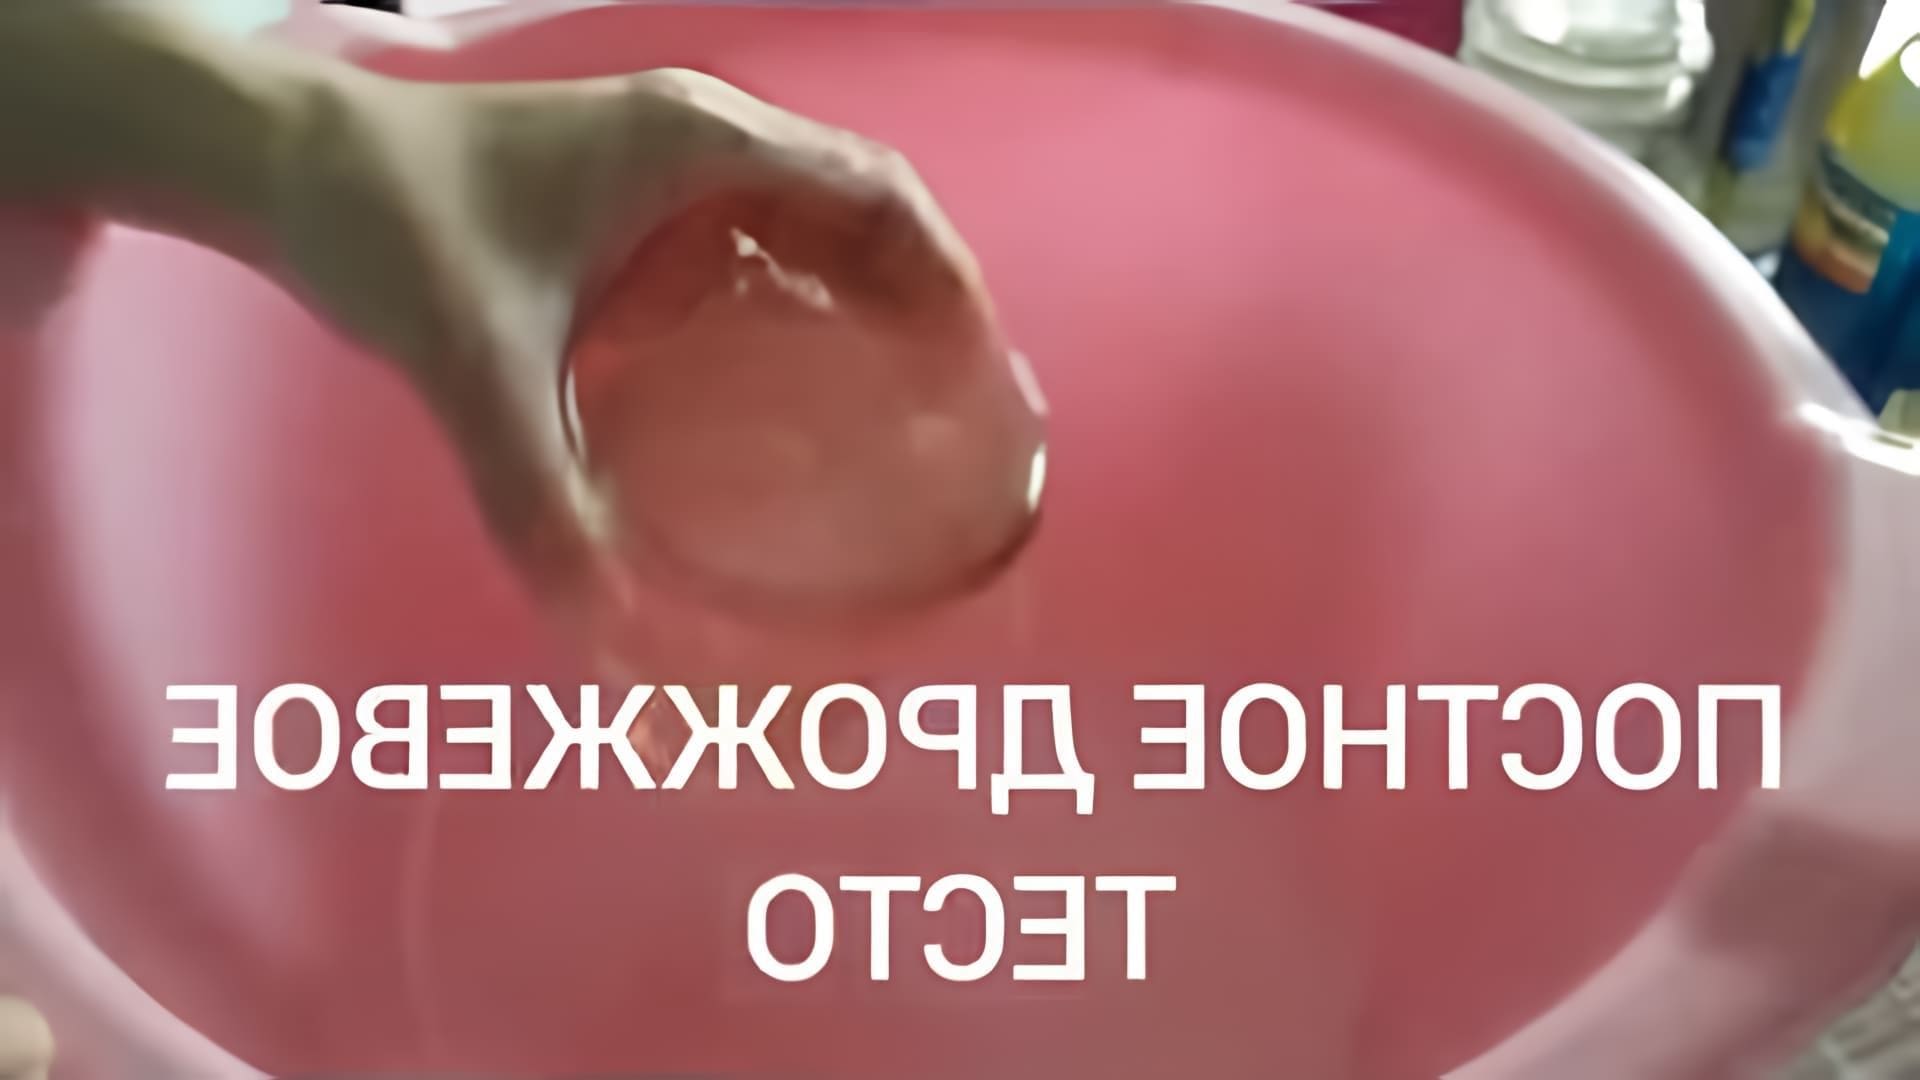 В этом видео-ролике вы увидите, как приготовить постное дрожжевое тесто с крахмалом для пирогов